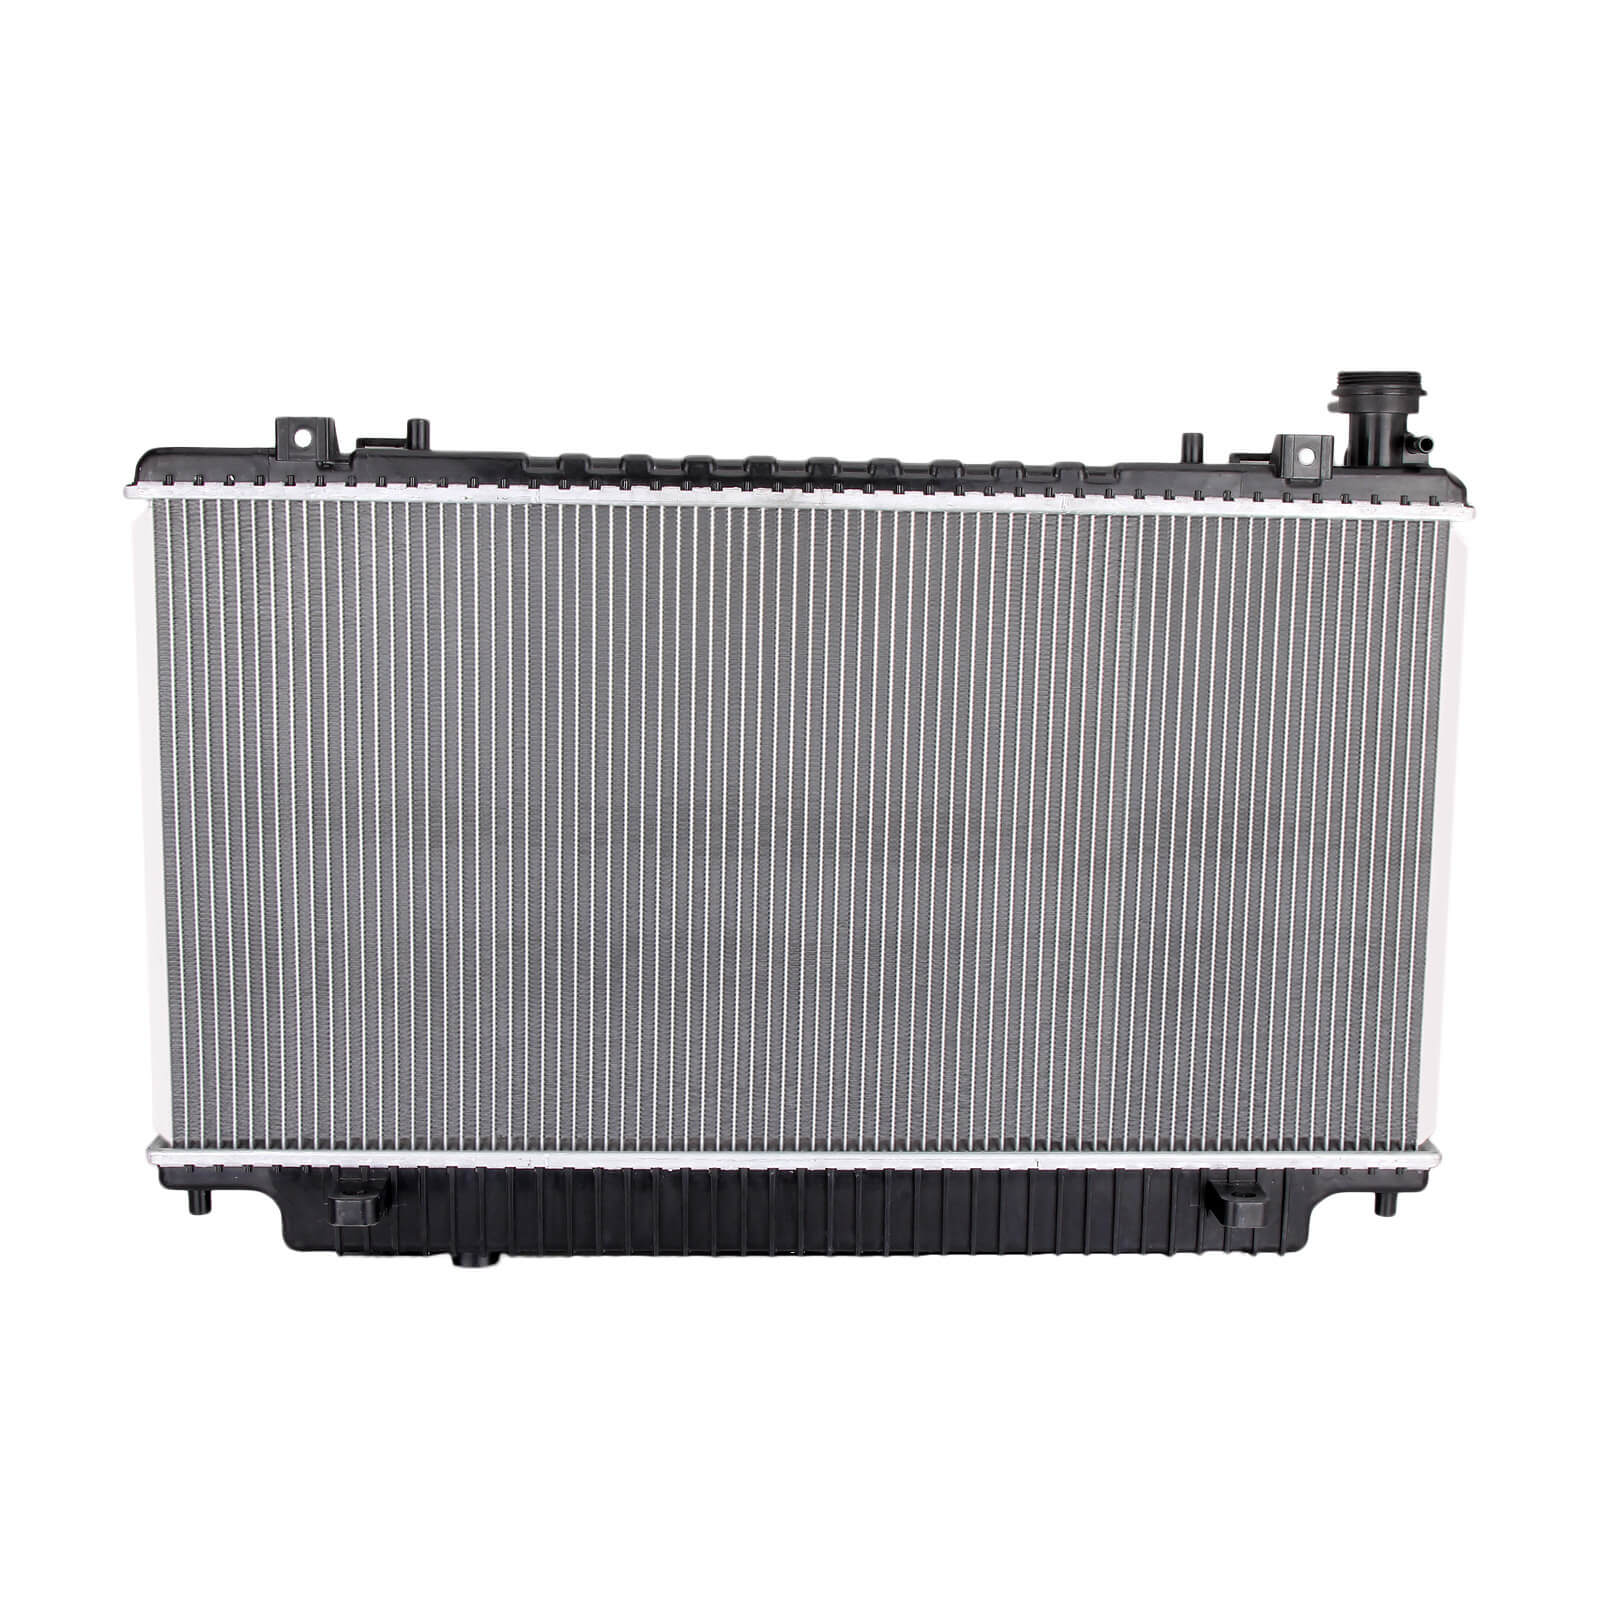 Dromedary-High Quality New 2688 Full Aluminum Radiator For Lexus Rx 330 33-202-v6-2